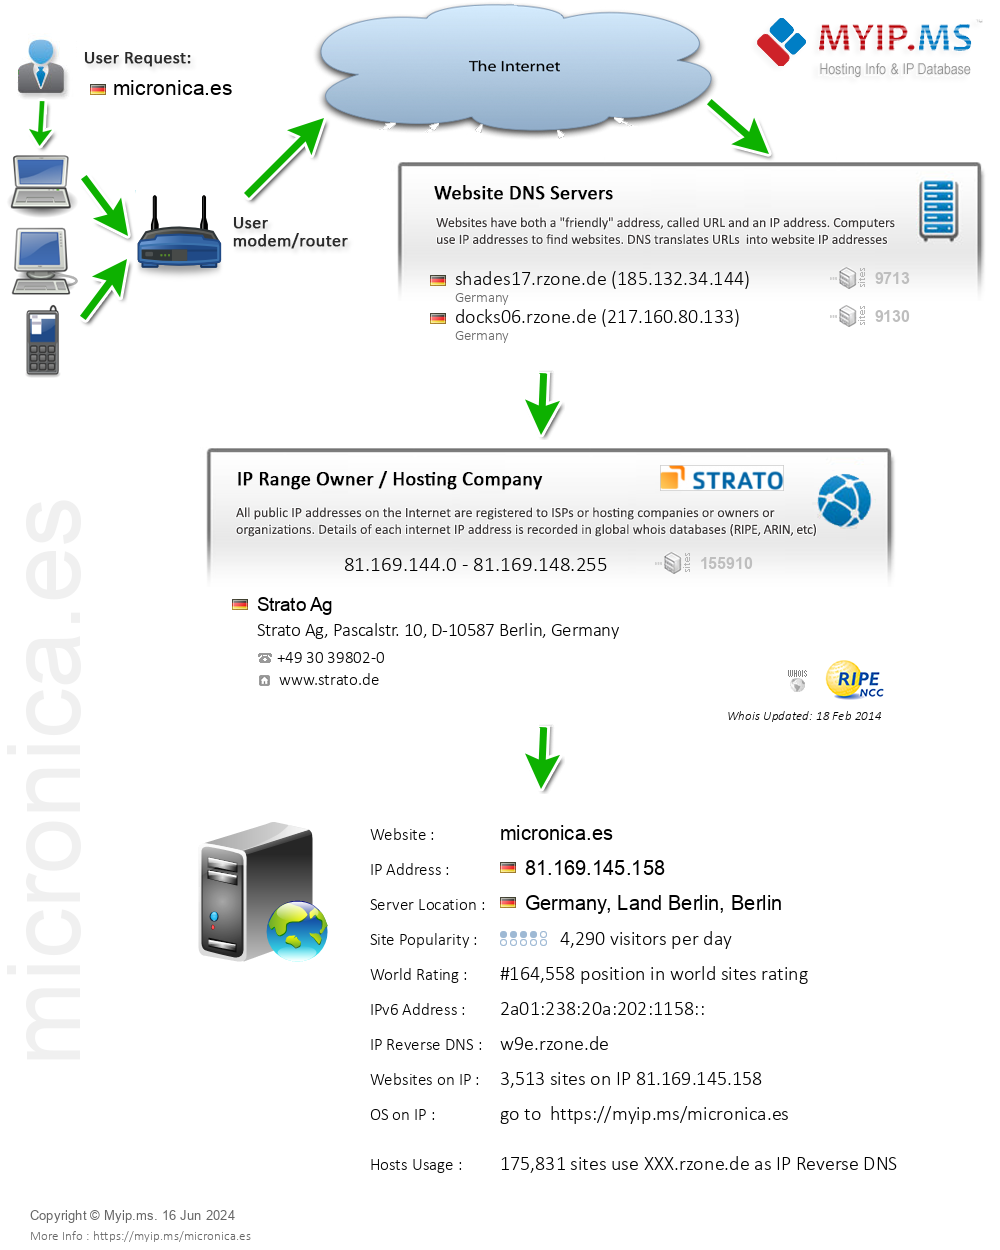 Micronica.es - Website Hosting Visual IP Diagram